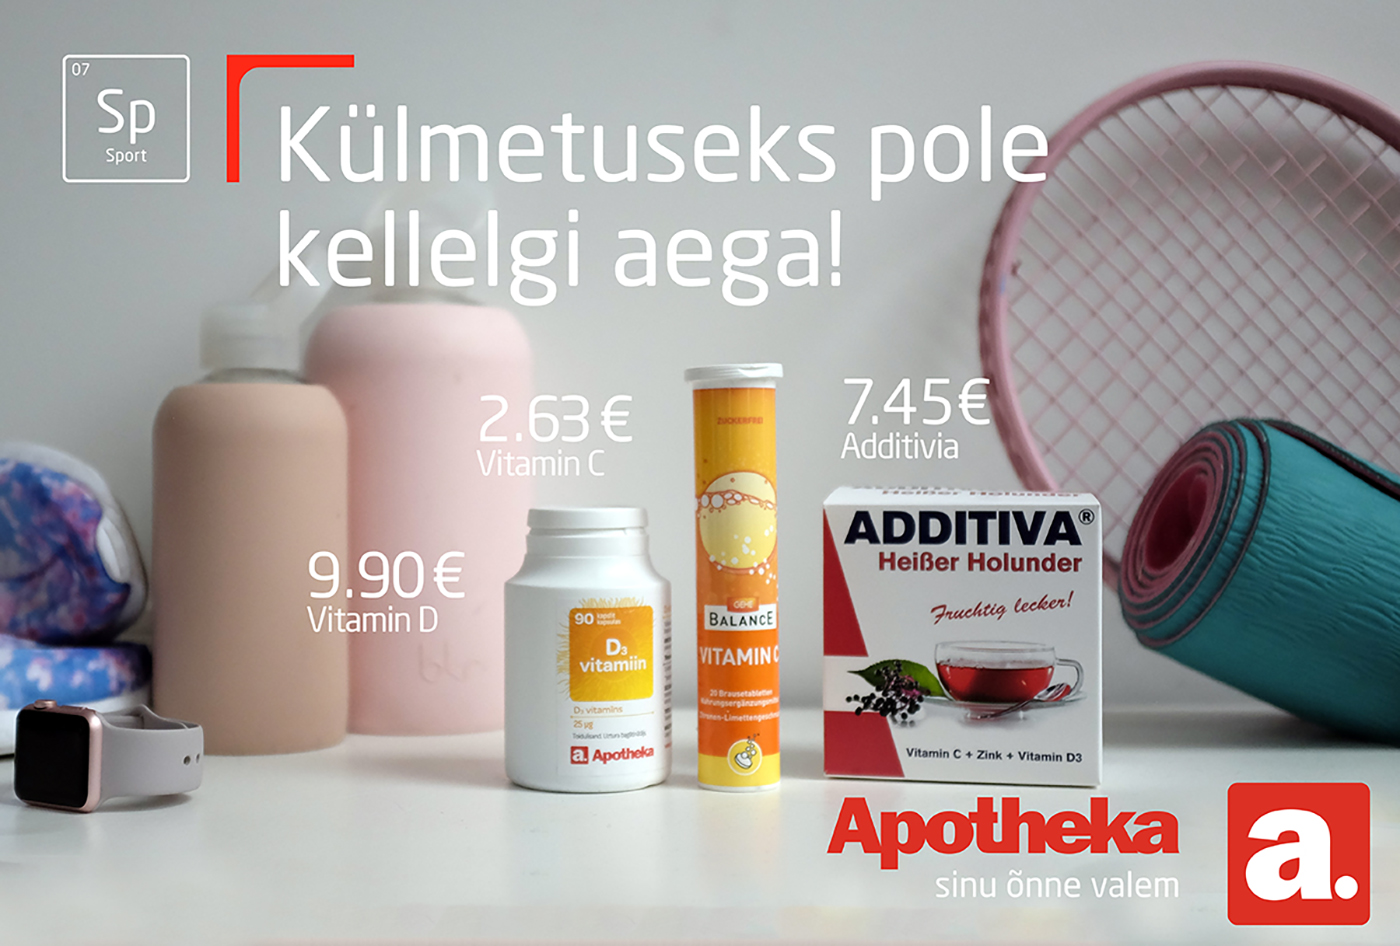 Apotheka – Rebranding